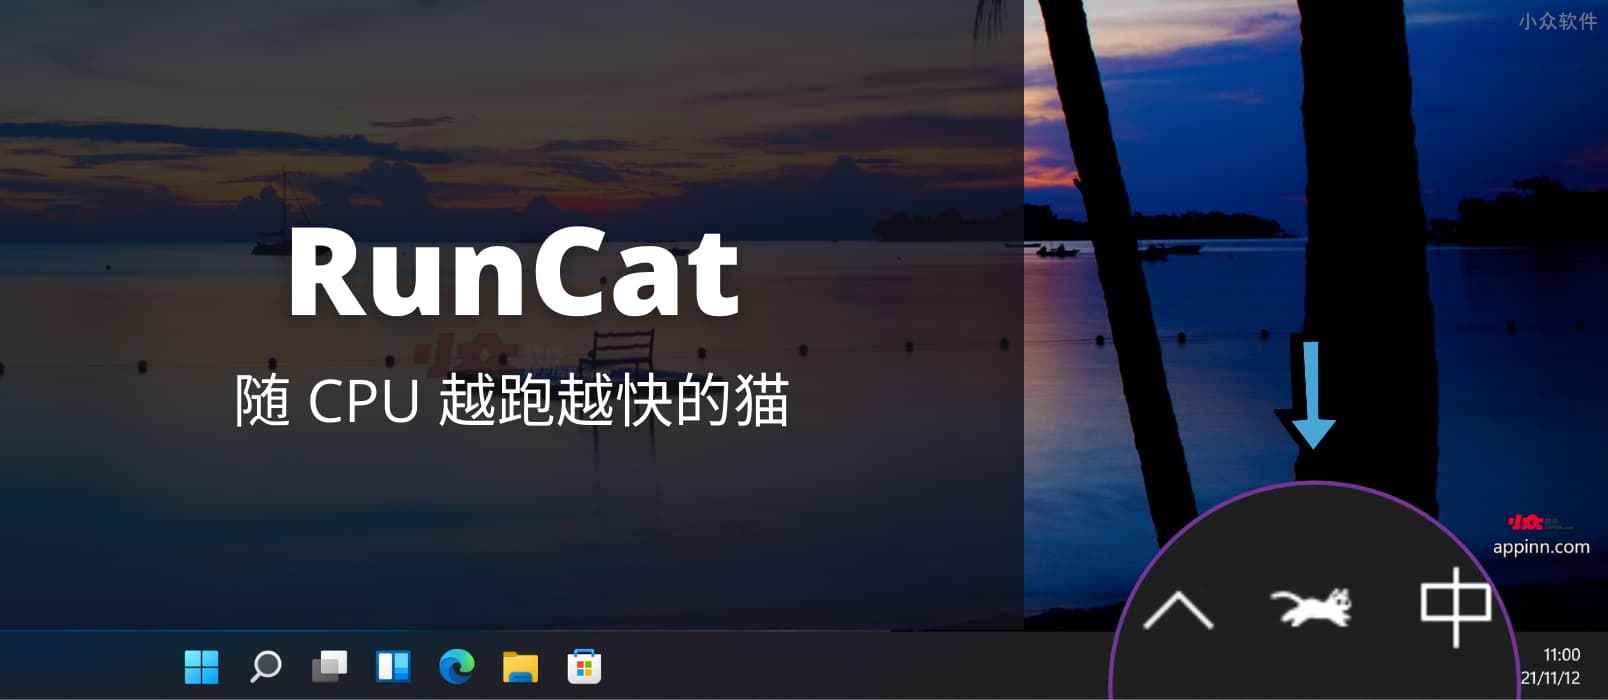 RunCat - 在 Windows 任务栏，随 CPU 越跑越快的猫